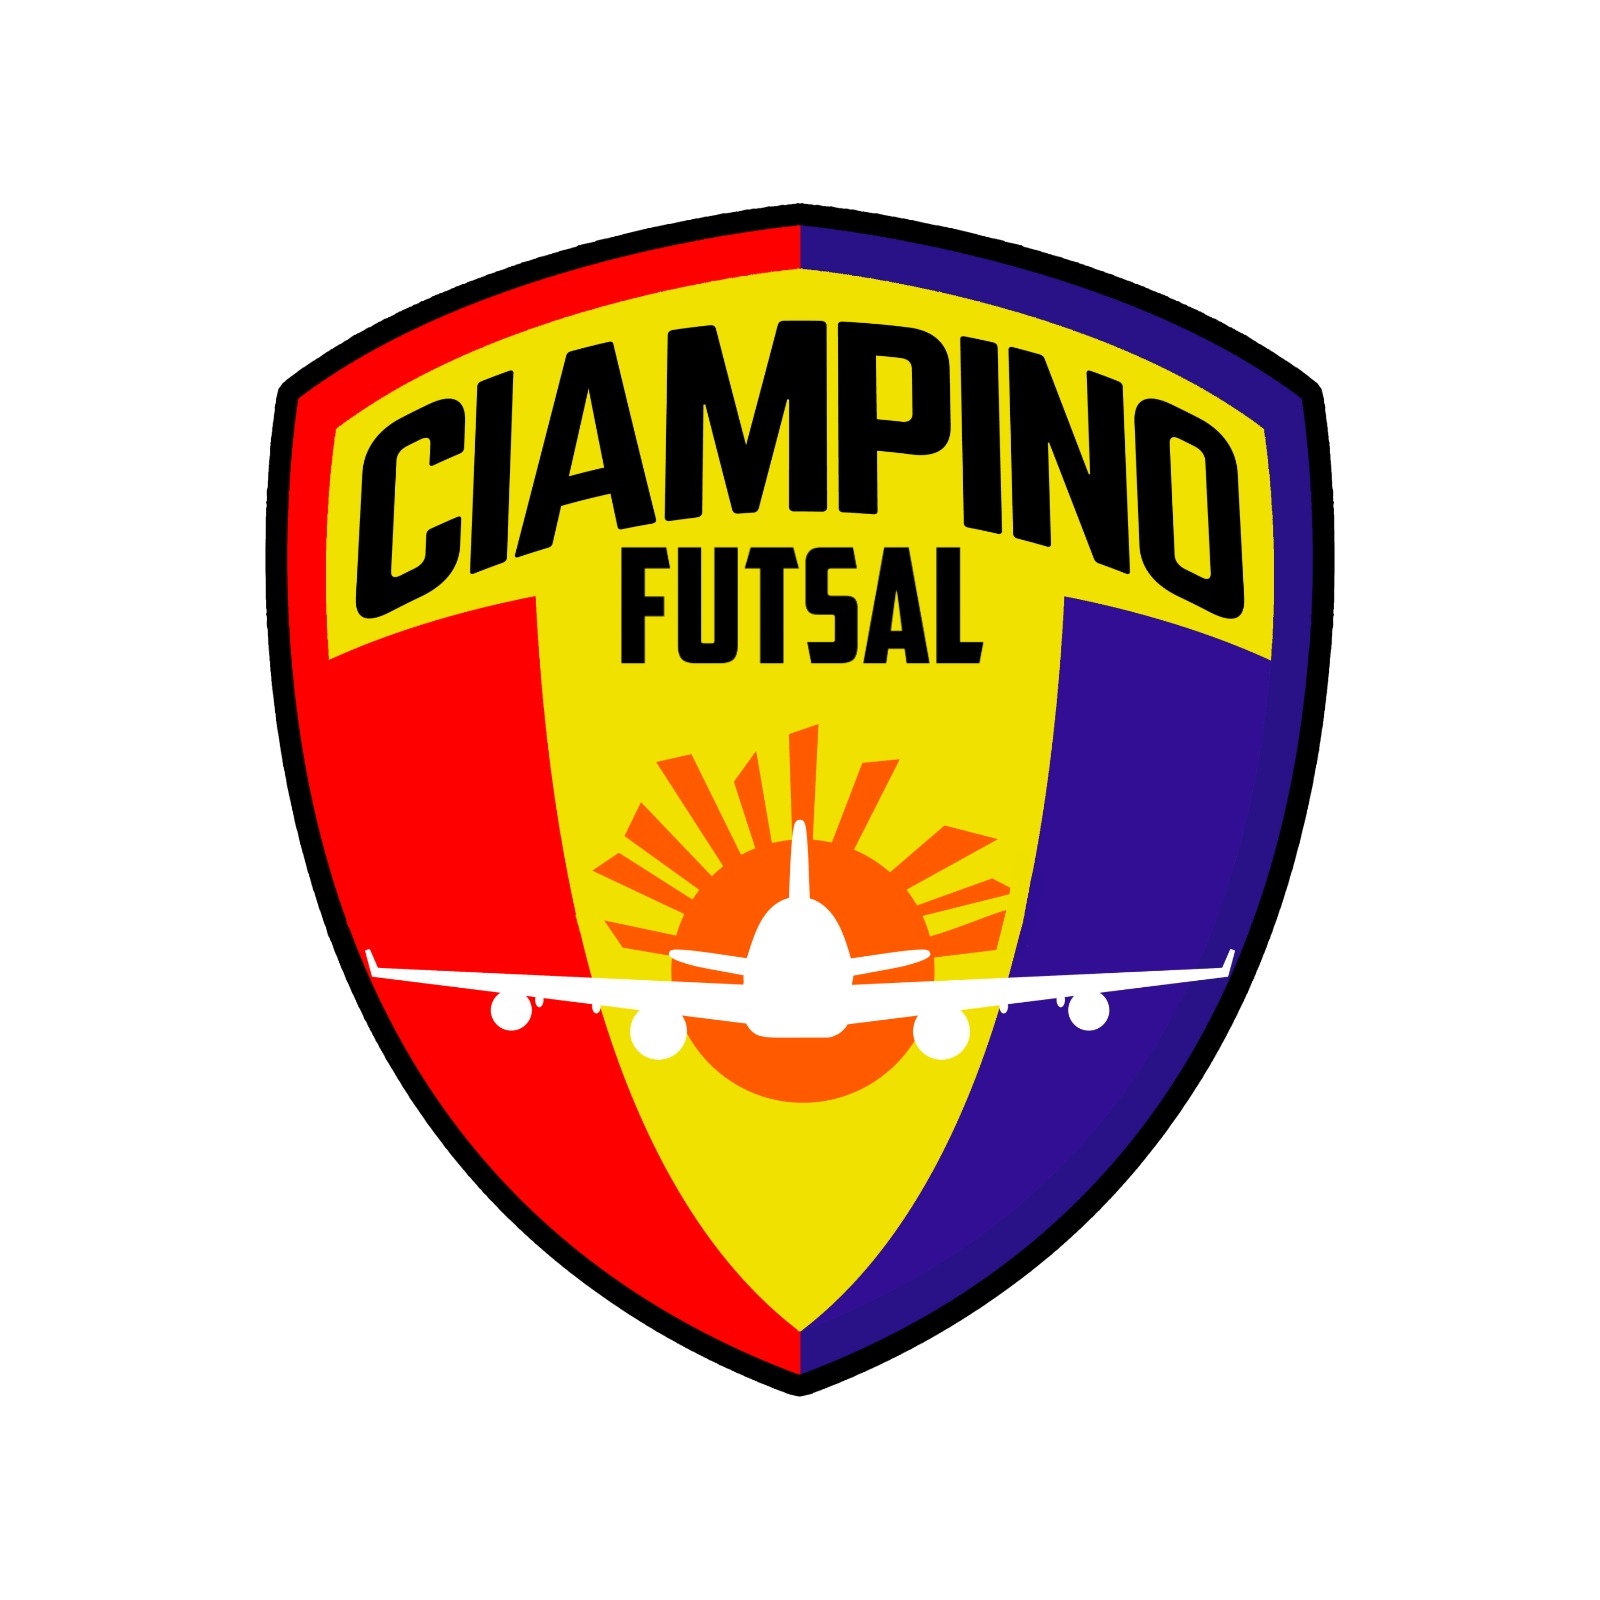 Ciampino Futsal.jpg